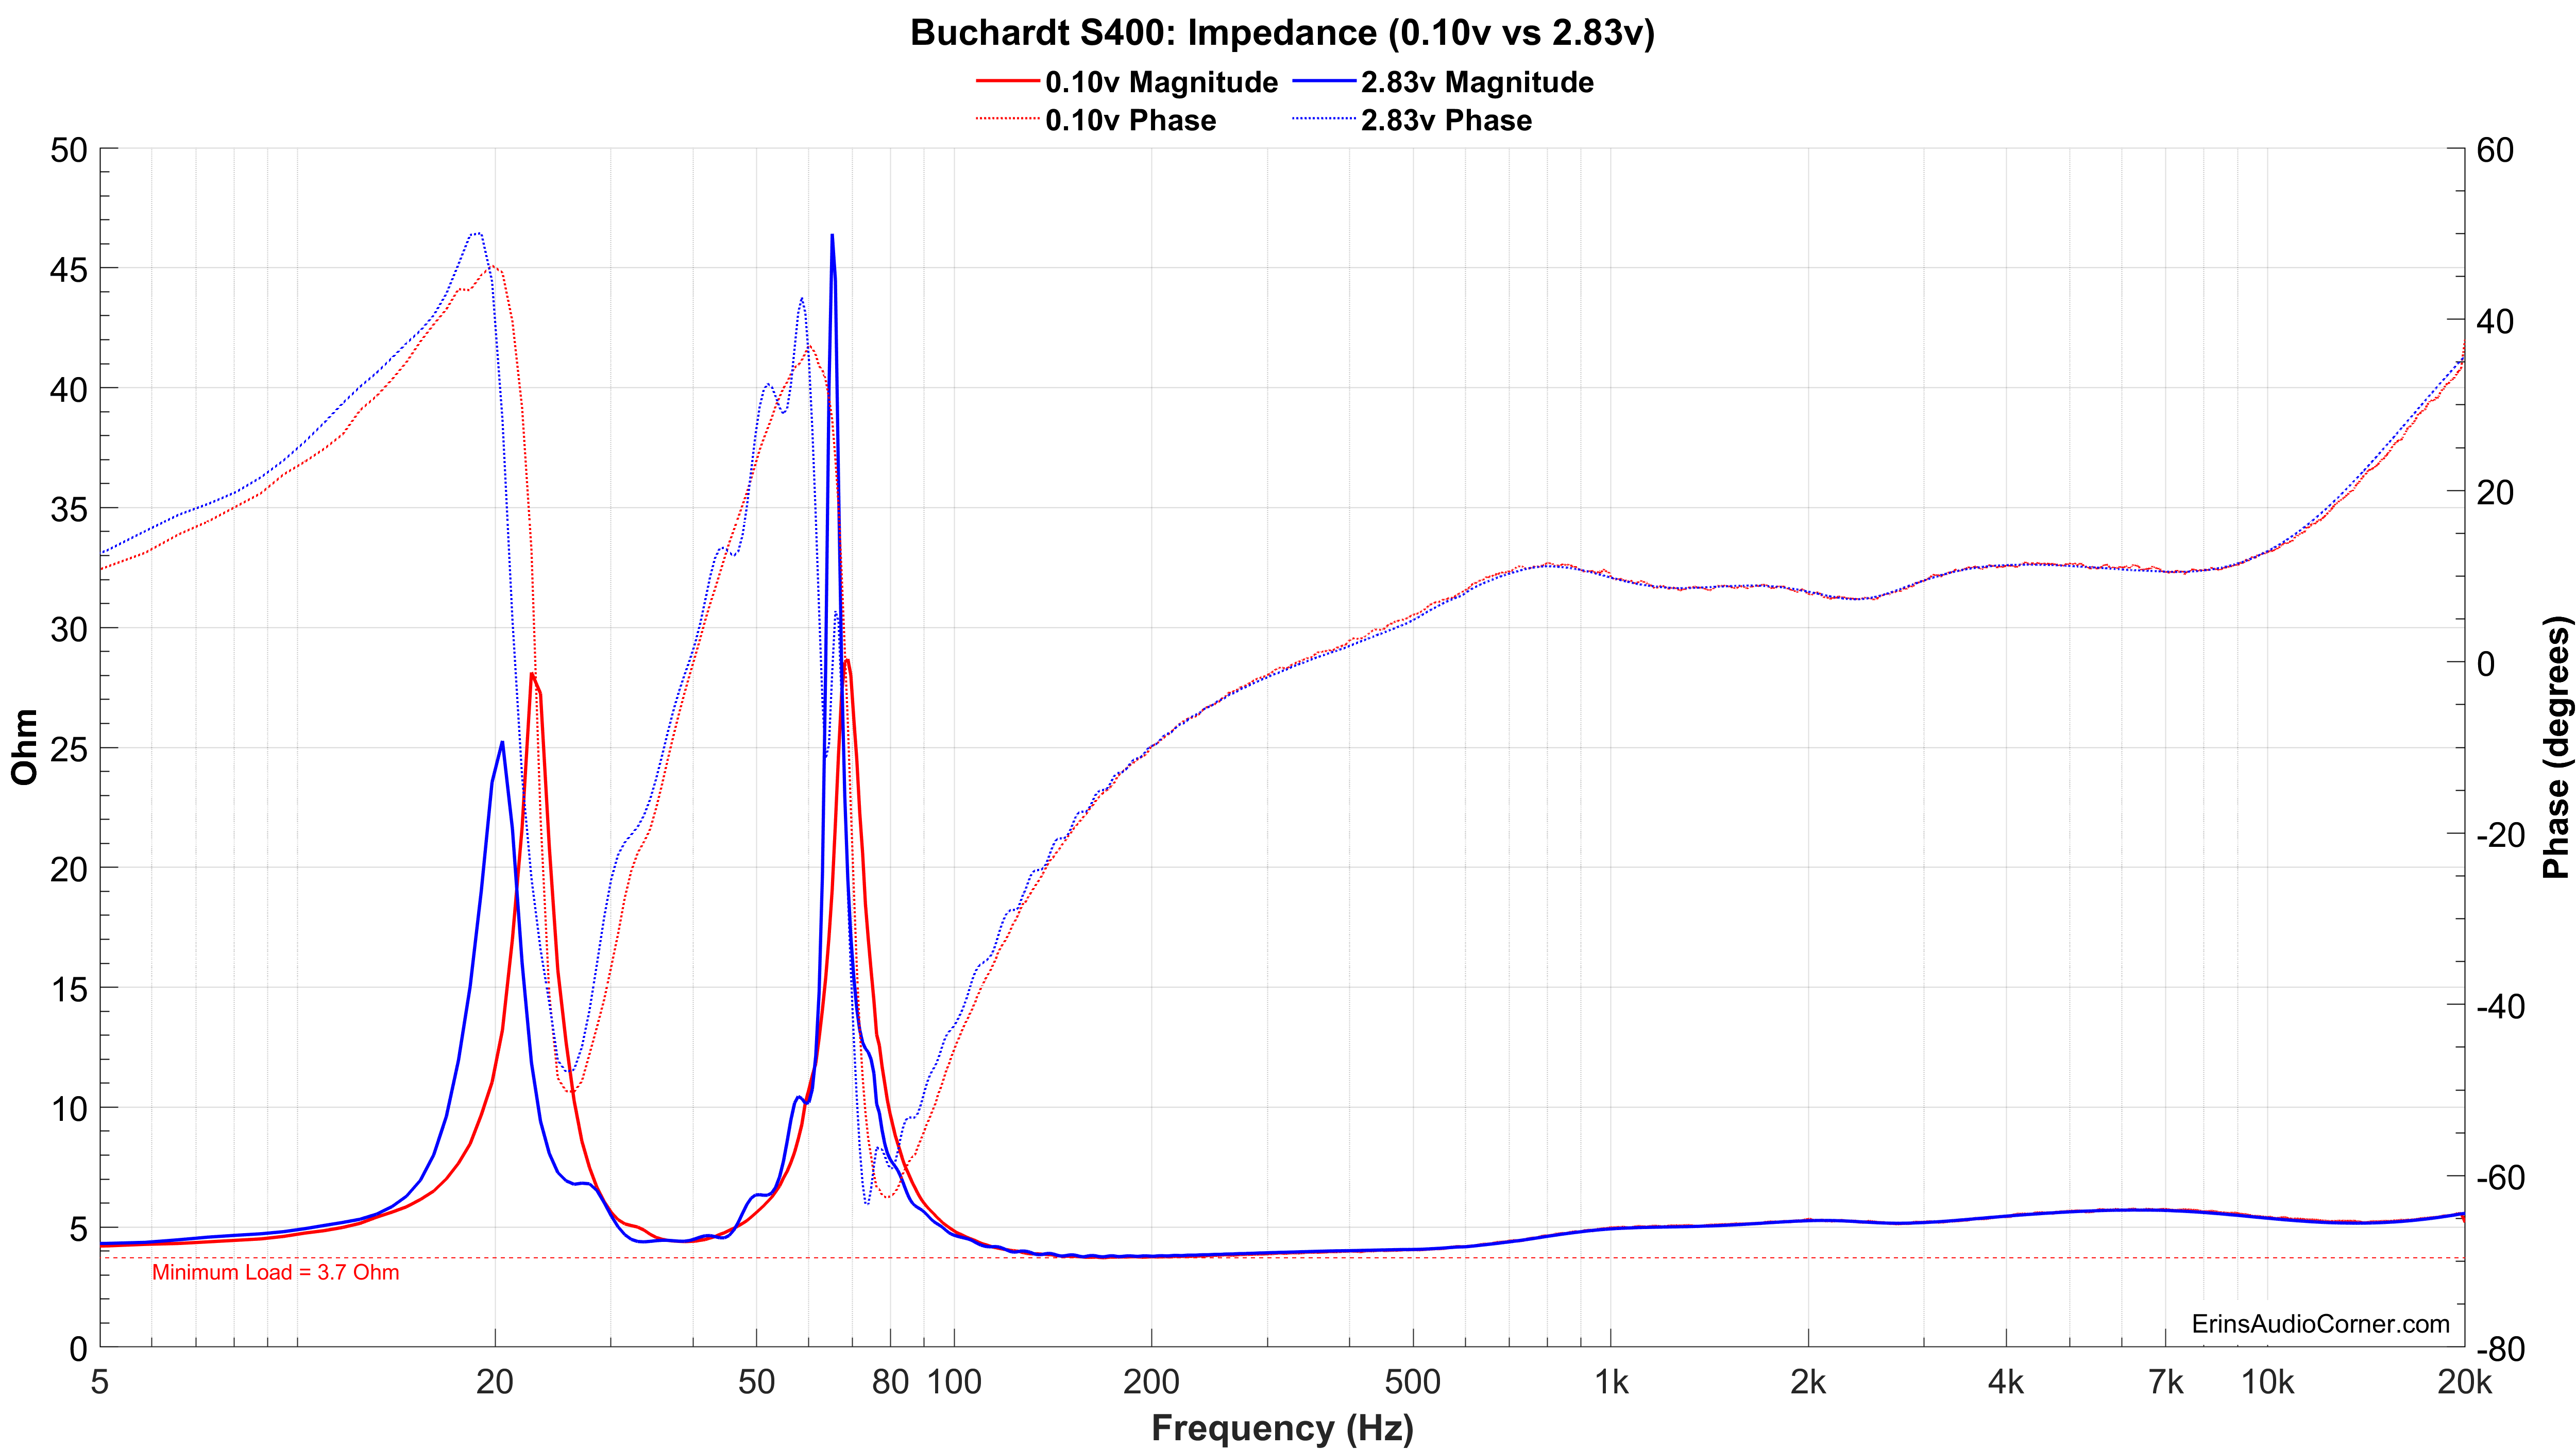 Buchardt S400 Impedance 0.1v & 2.83v.png